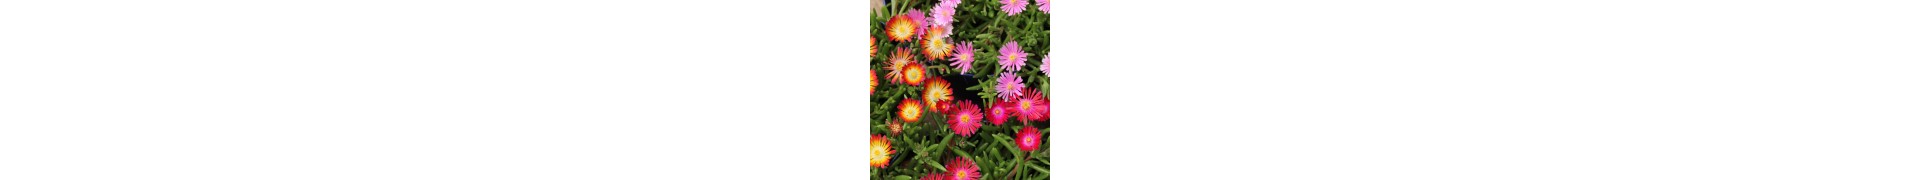 Plantas ao ar livre com flores resistentes para o jardim| La Majosa